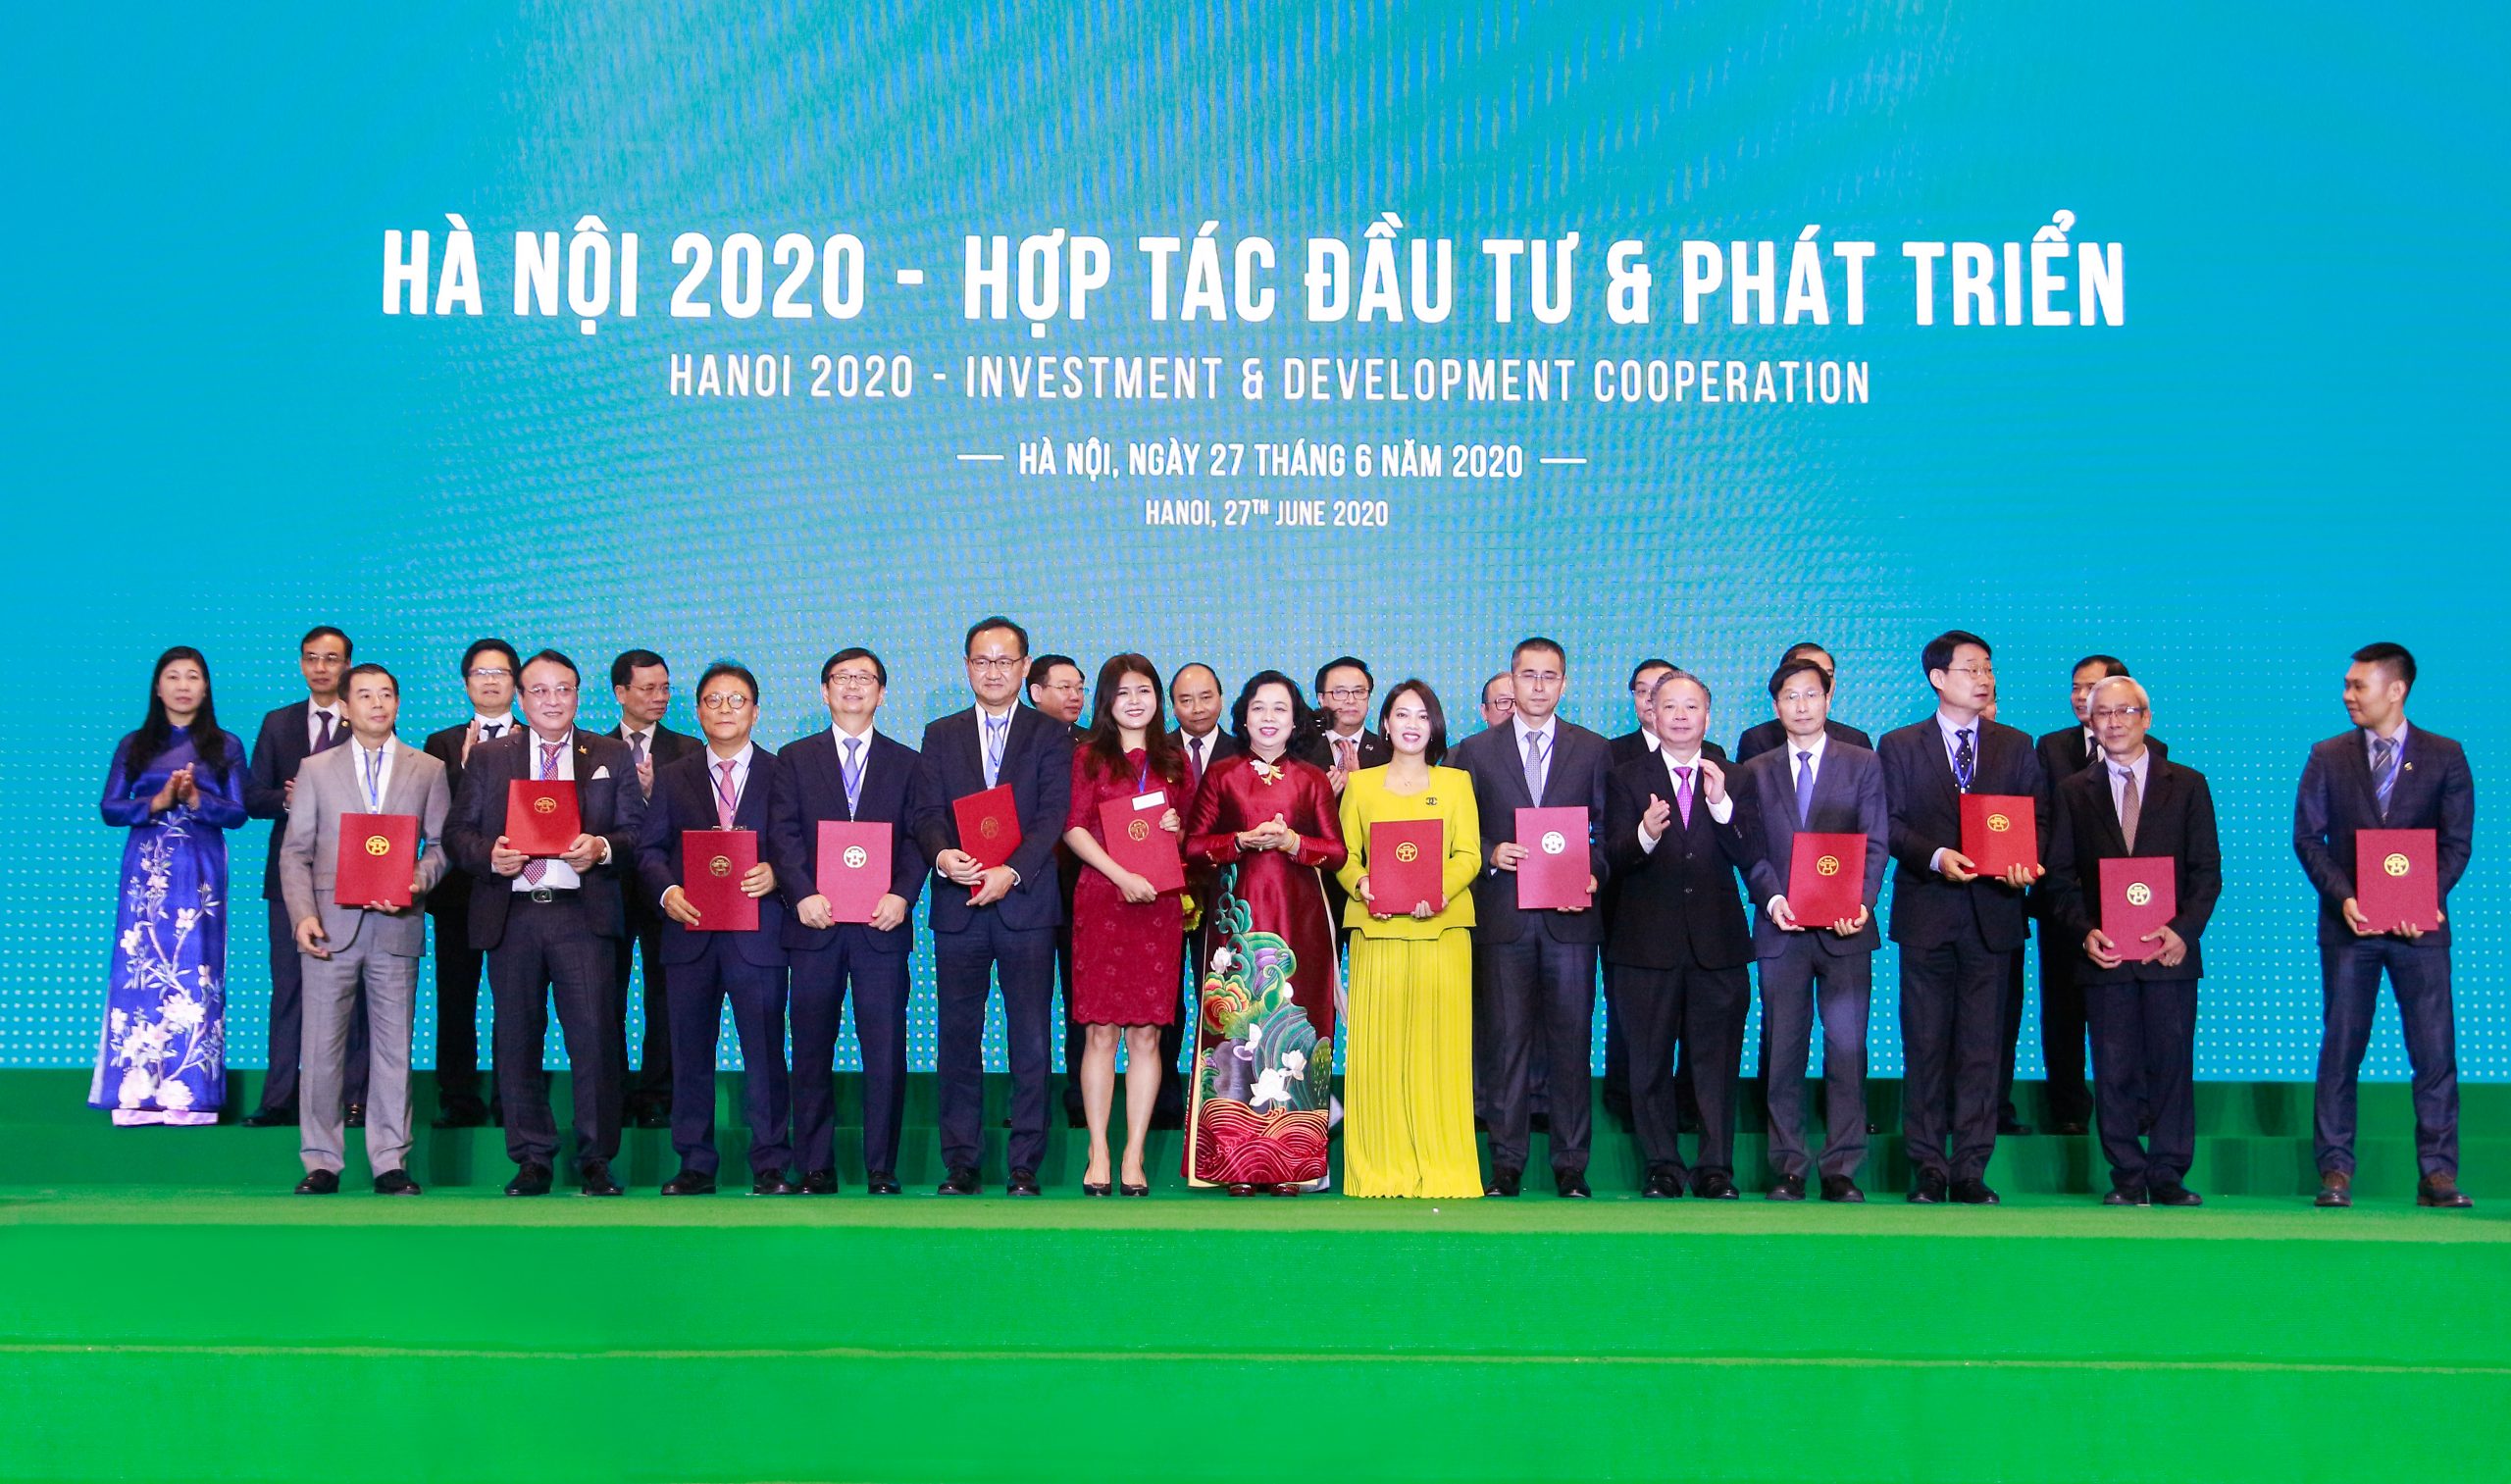 Đại diện Thành phố Hà Nội trao cho đại diện KDI Holdings Biên bản ghi nhớ hợp tác đầu tư hai dự án tại Bắc Từ Liêm. Ảnh: KDI Holdings.